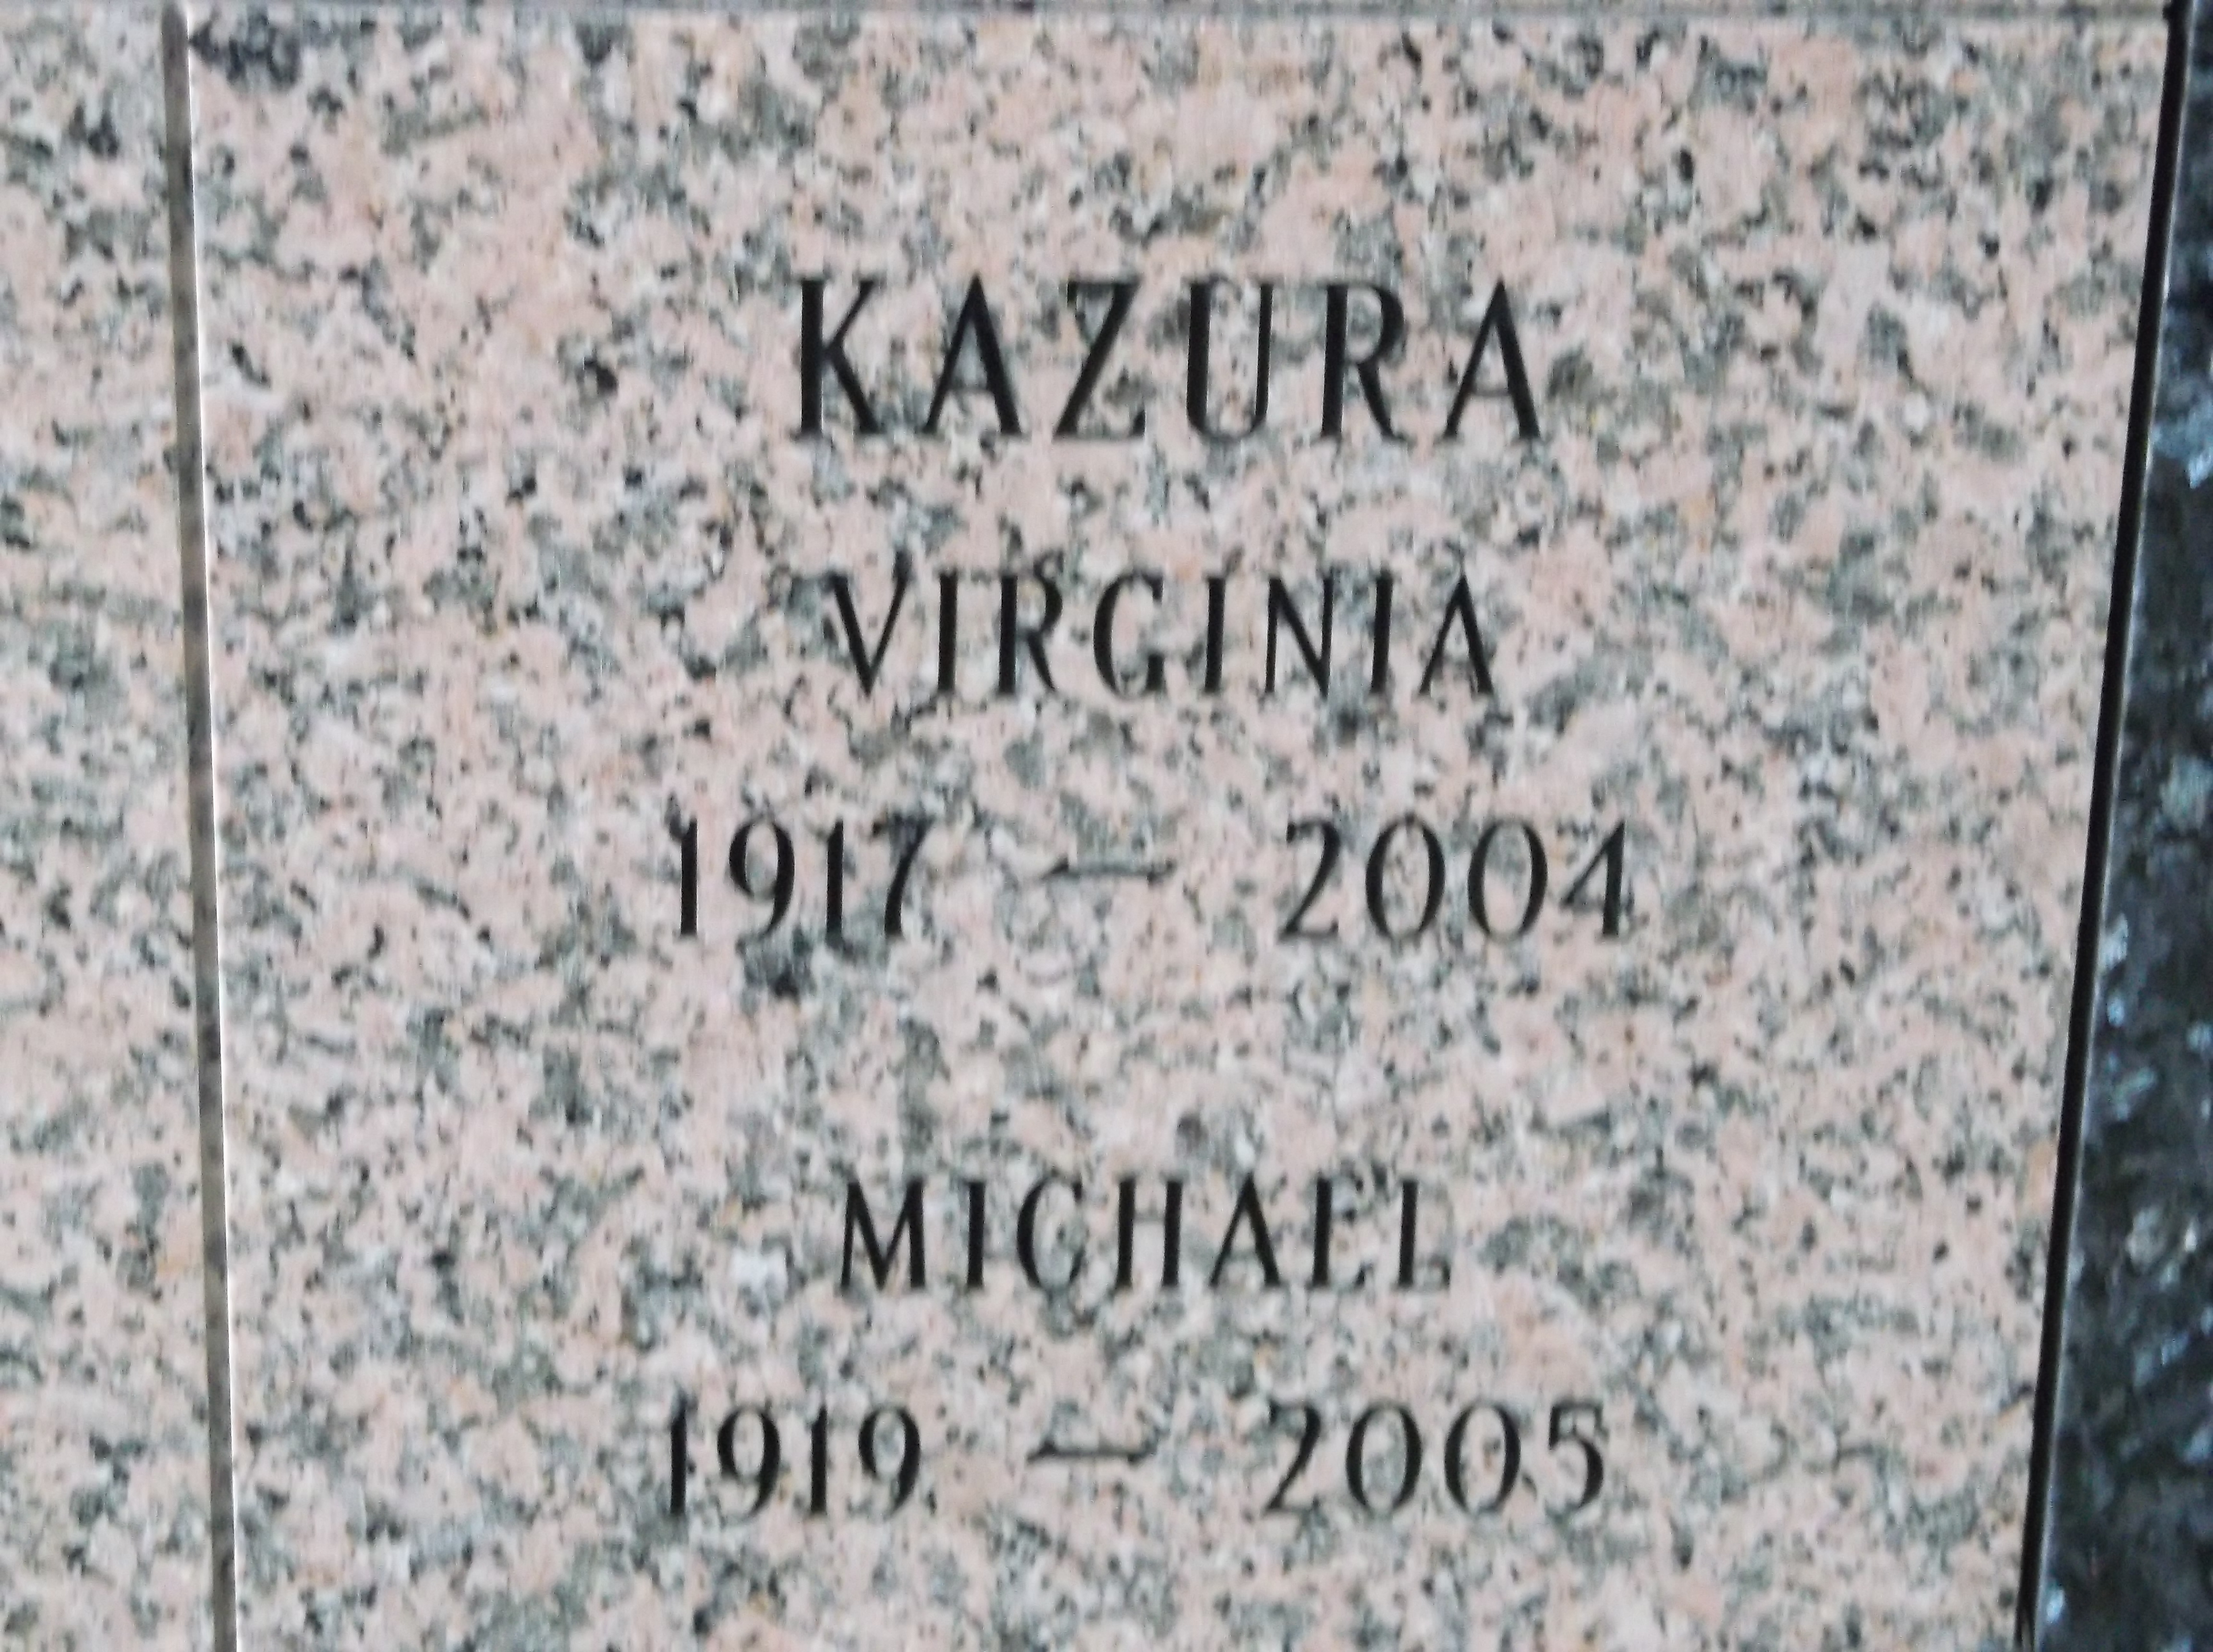 Michael Kazura